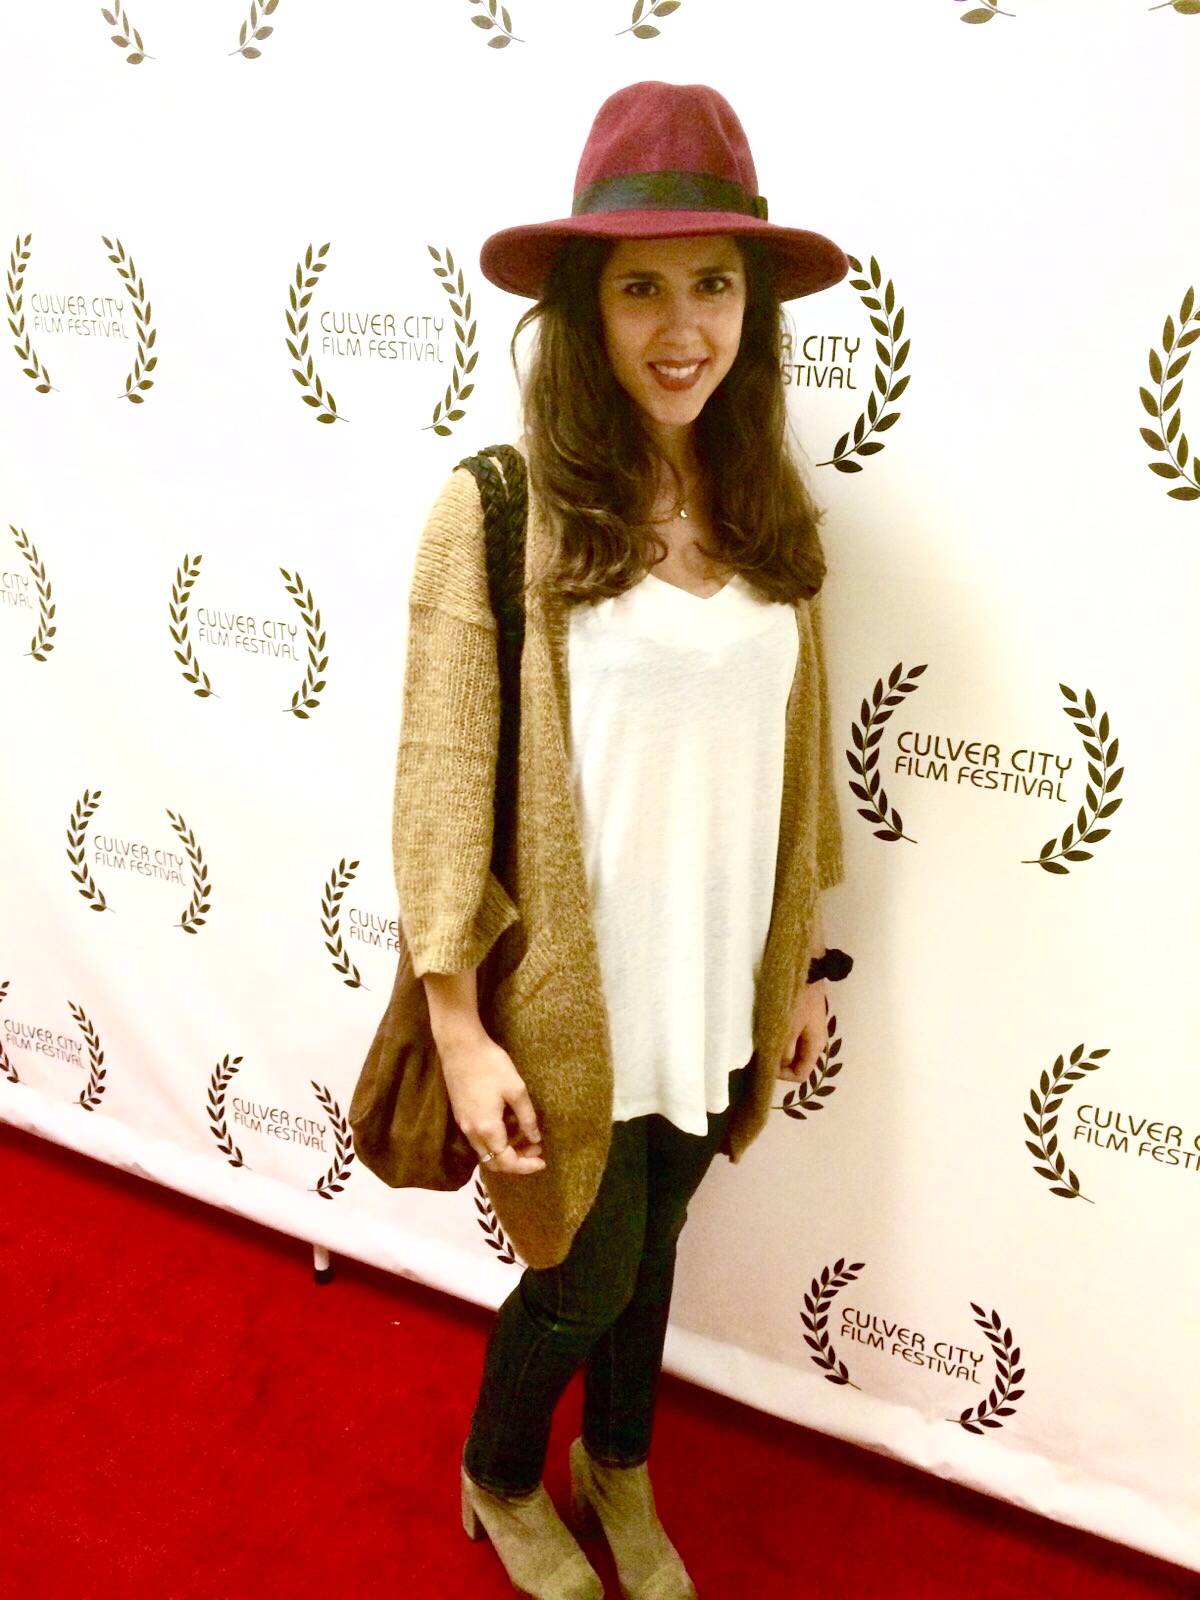 Culver City Film Festival 2015